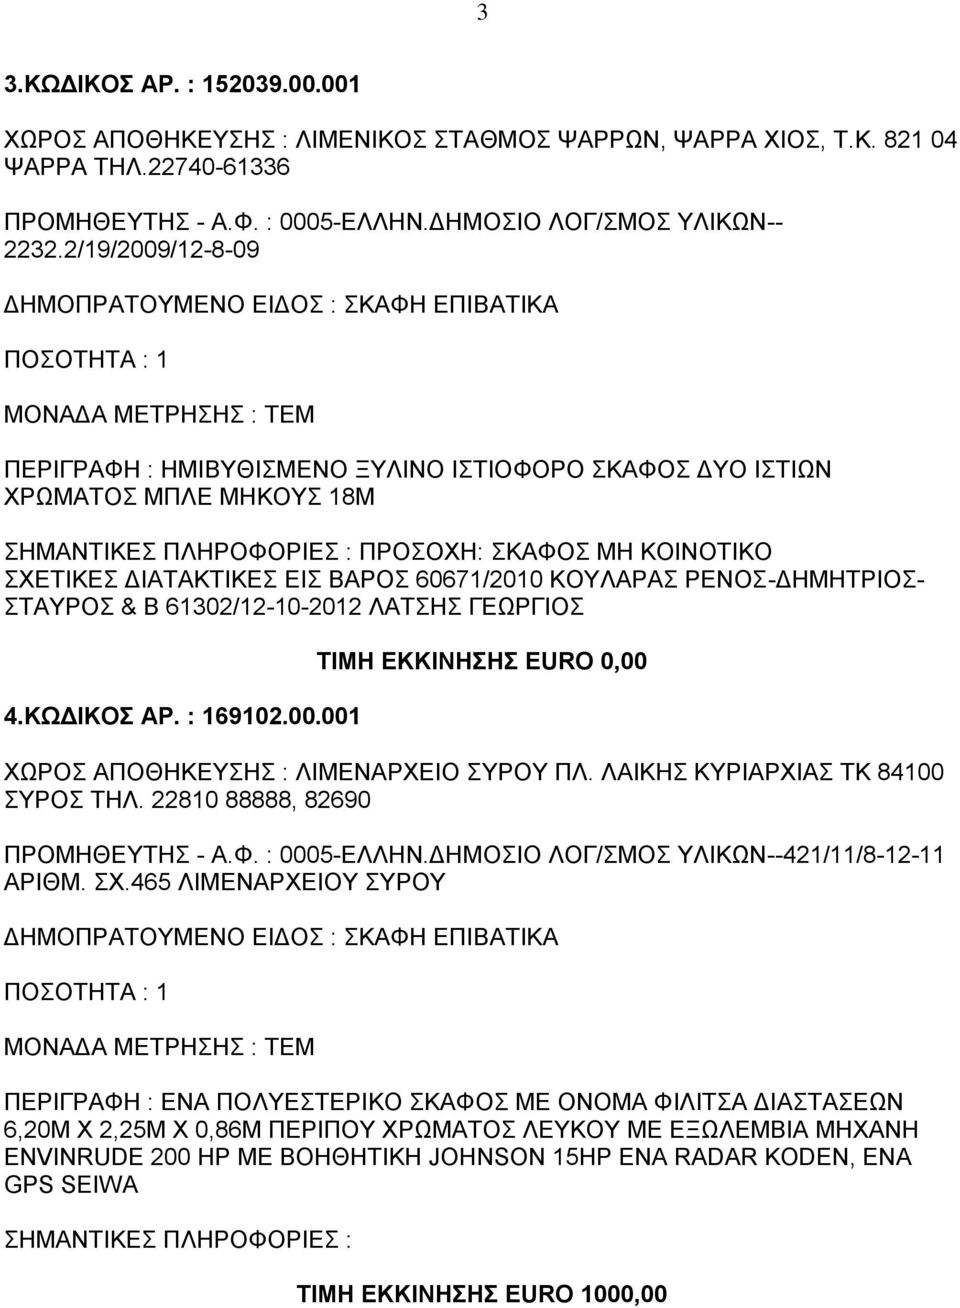 ΚΟΥΛΑΡΑΣ ΡΕΝΟΣ-ΔΗΜΗΤΡΙΟΣ- ΣΤΑΥΡΟΣ & Β 61302/12-10-2012 ΛΑΤΣΗΣ ΓΕΩΡΓΙΟΣ 4.ΚΩΔΙΚΟΣ ΑΡ. : 169102.00.001 ΤΙΜΗ ΕΚΚΙΝΗΣΗΣ EURO 0,00 ΧΩΡΟΣ ΑΠΟΘΗΚΕΥΣΗΣ : ΛΙΜΕΝΑΡΧΕΙΟ ΣΥΡΟΥ ΠΛ.